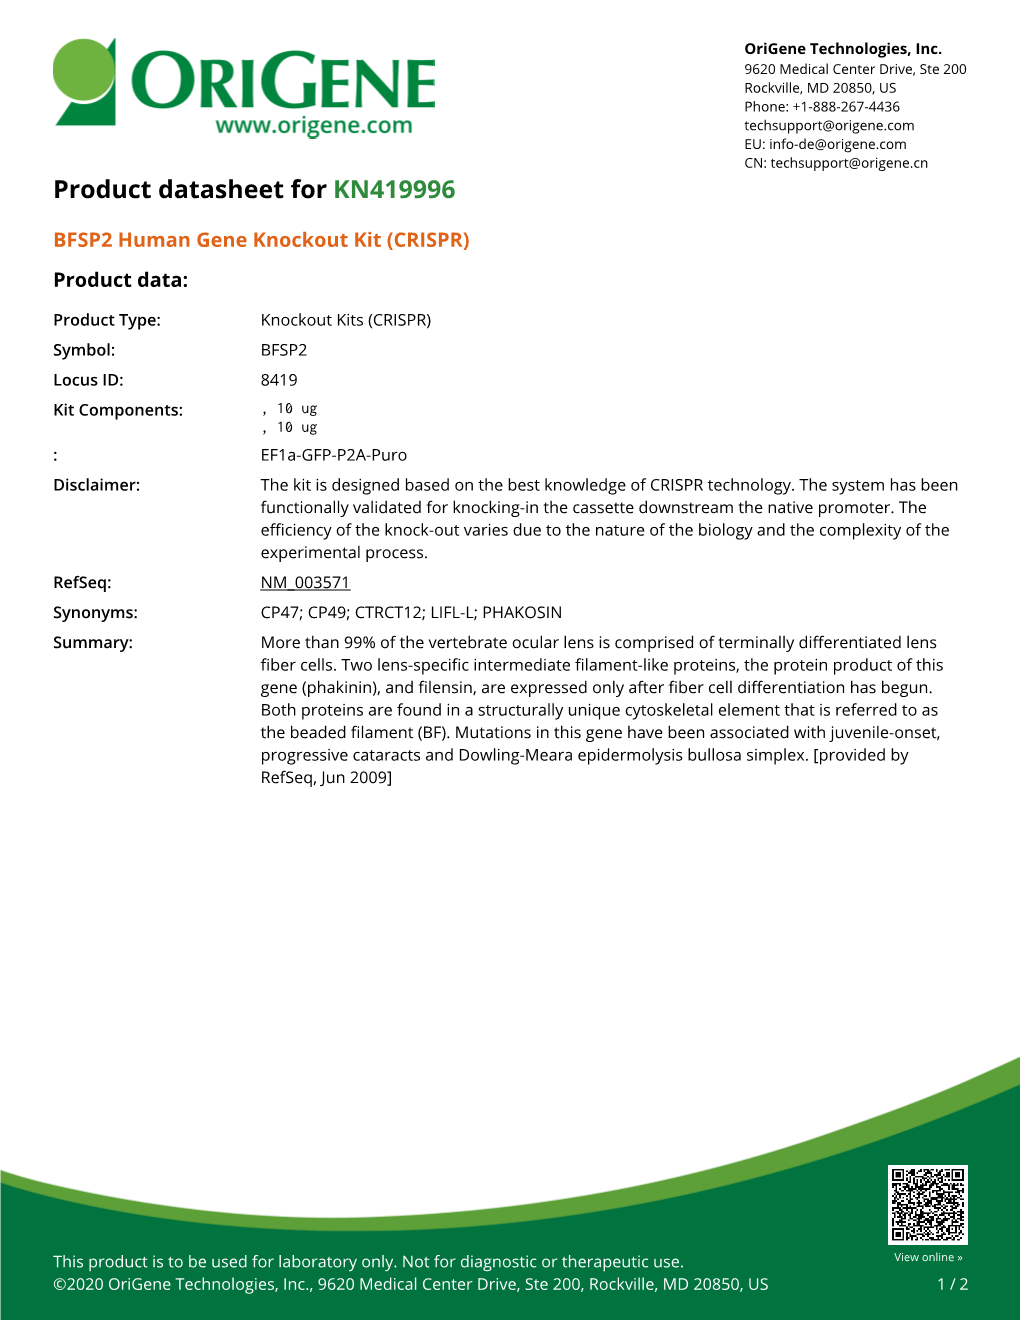 BFSP2 Human Gene Knockout Kit (CRISPR) – KN419996 | Origene